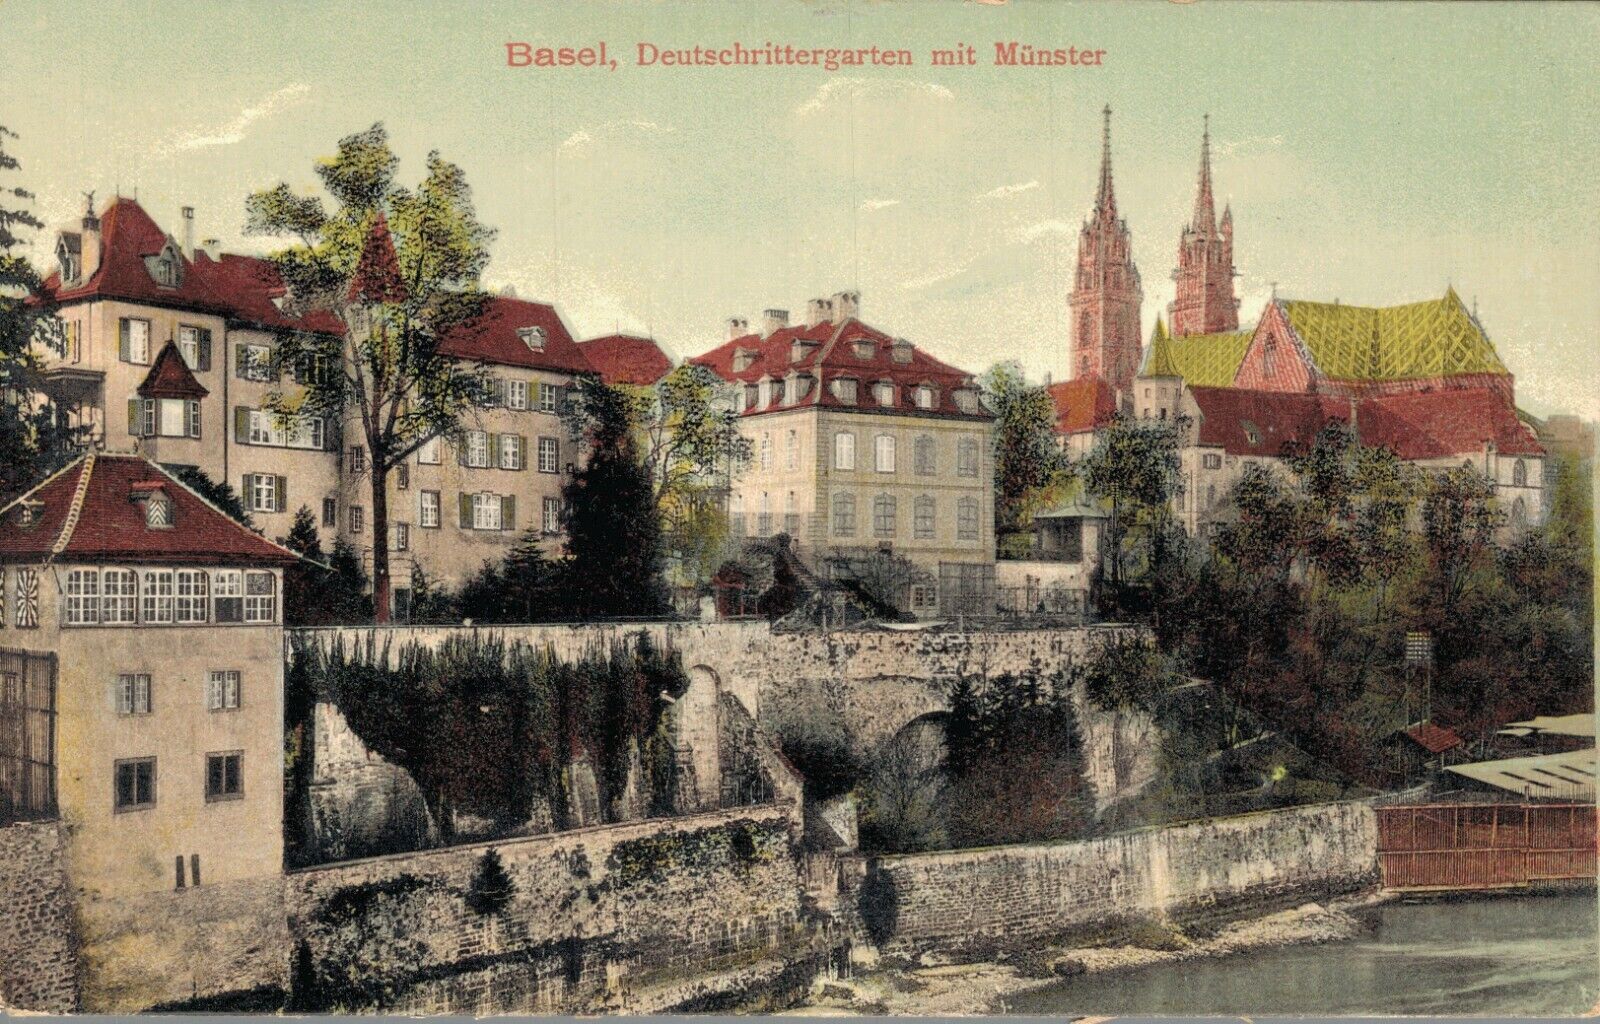 Switzerland Basel Deutschrittergarten mit Münster B20